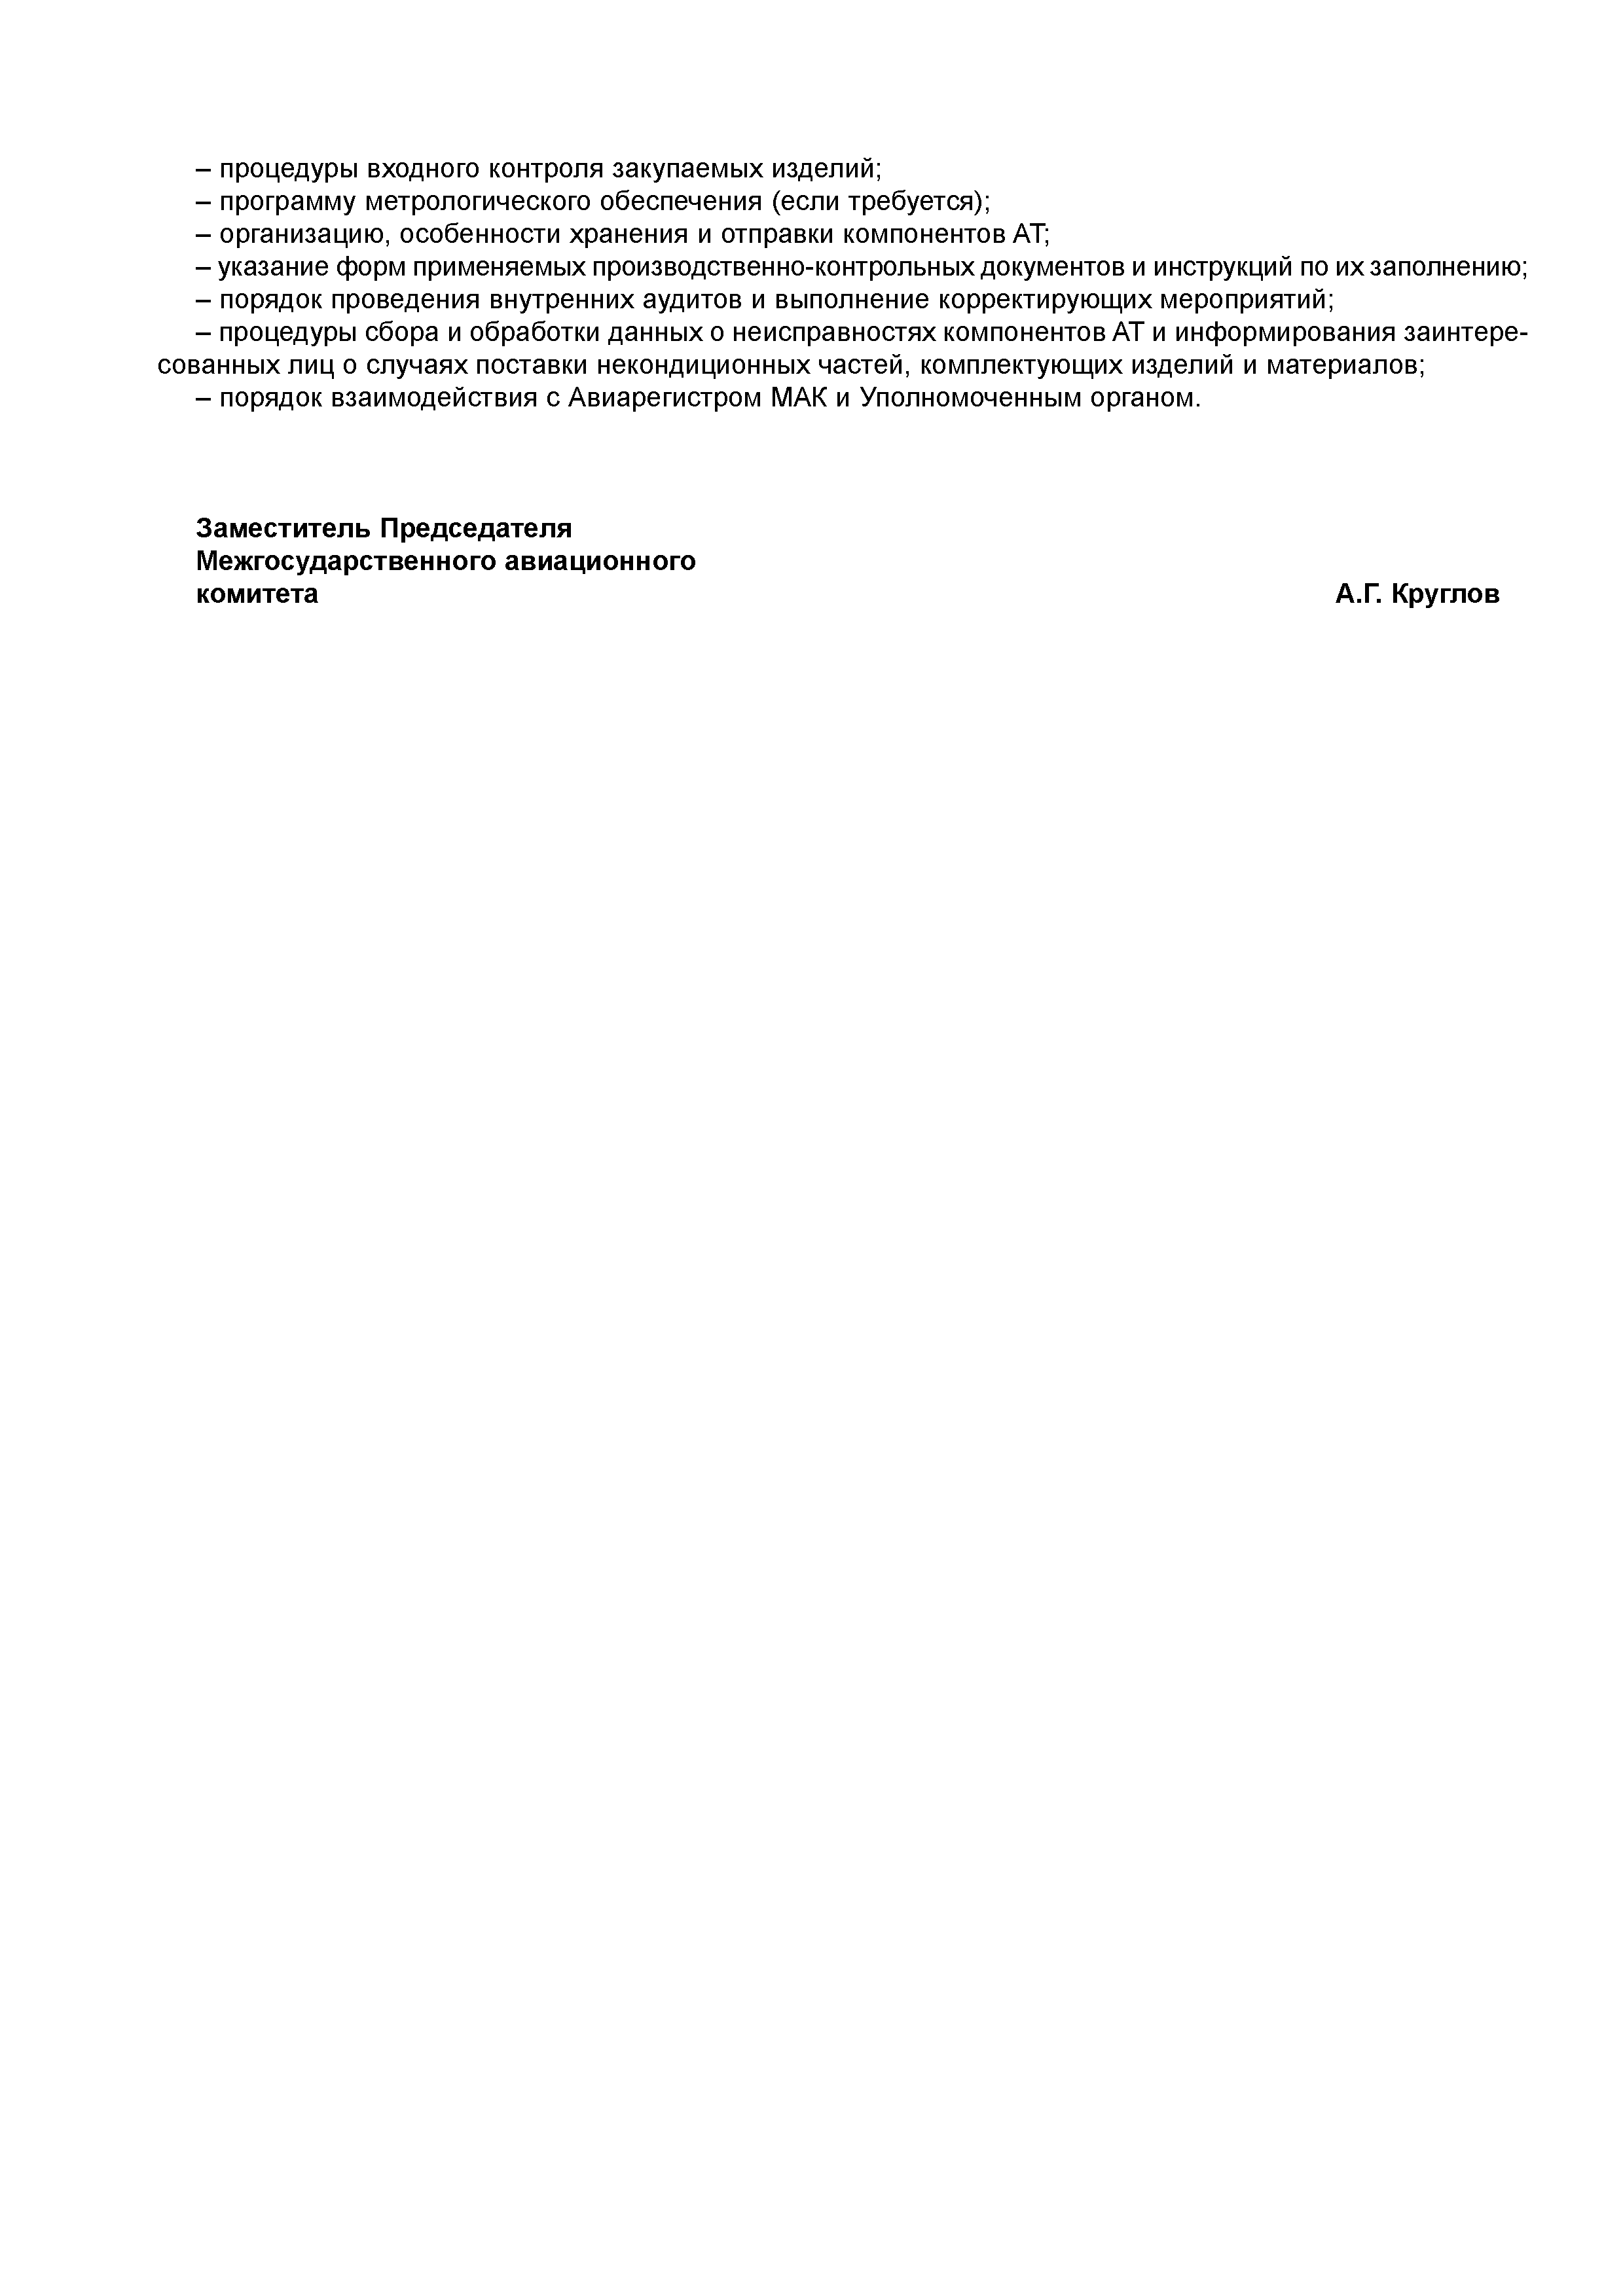 Директивное письмо 01-2002